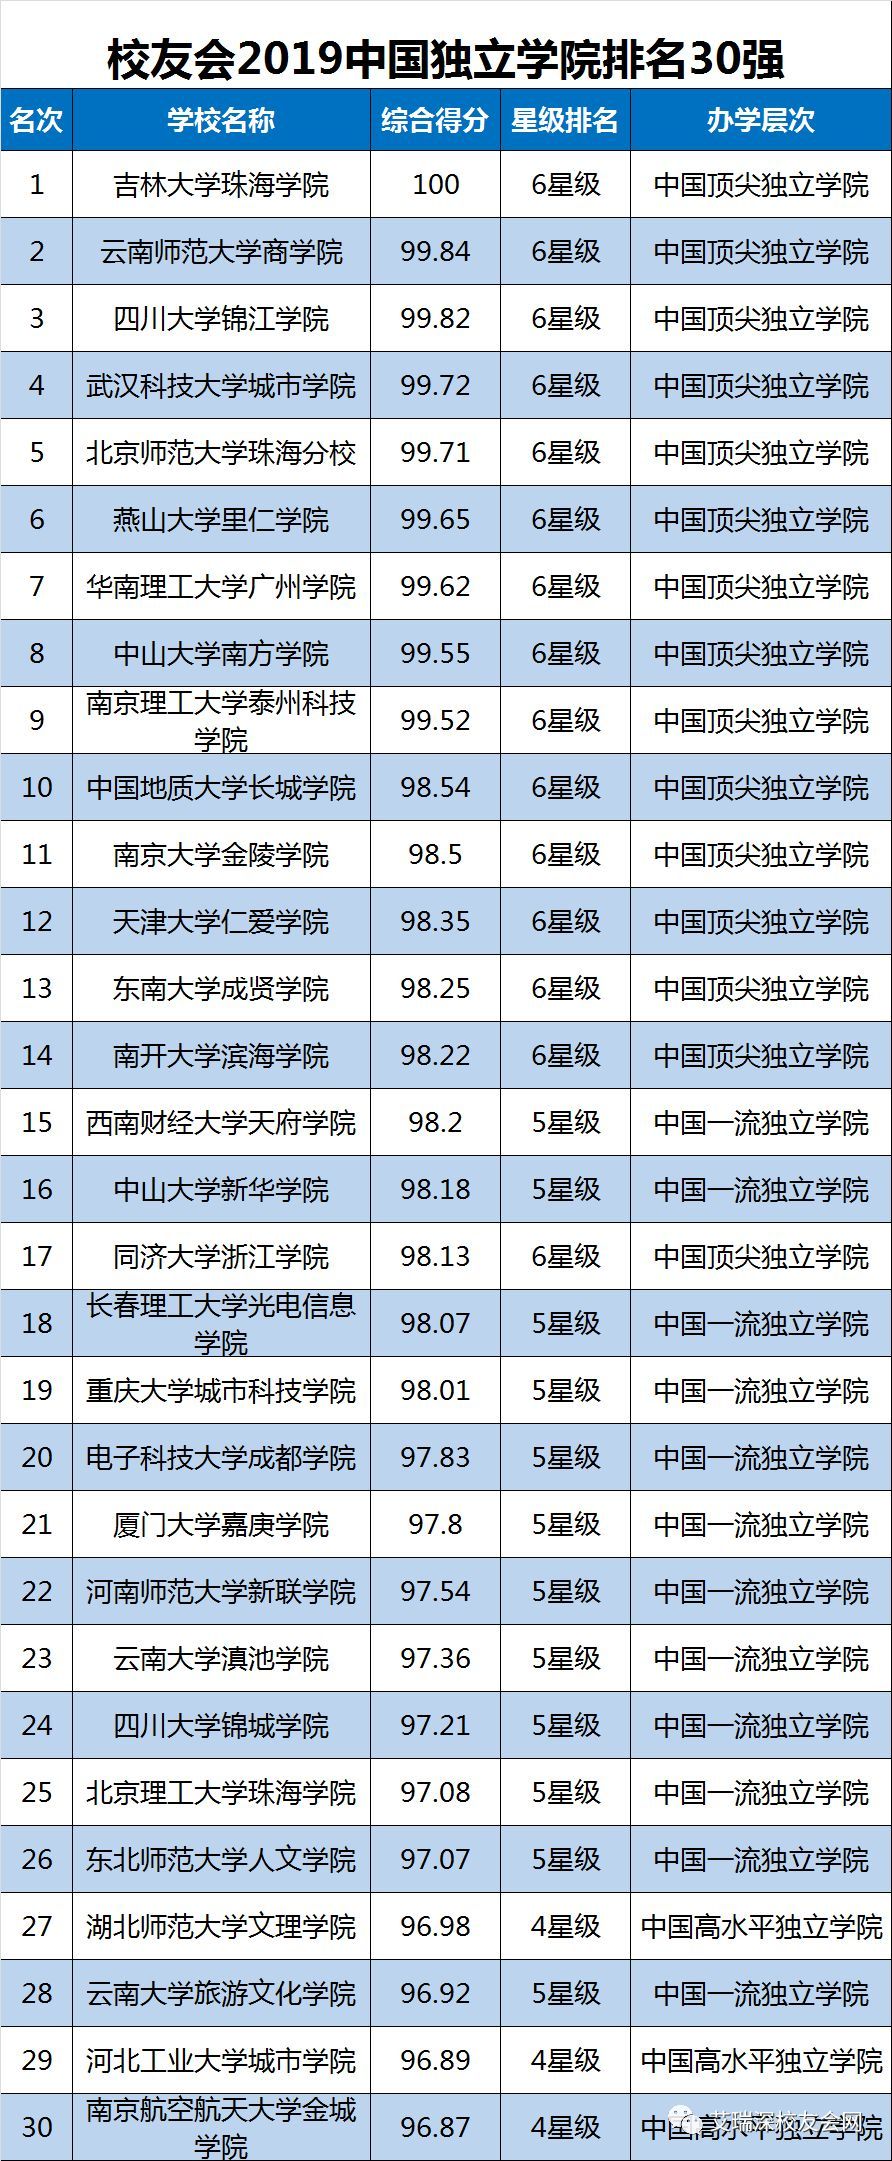 校友会版2019中国大学排名发布:北大、清华、